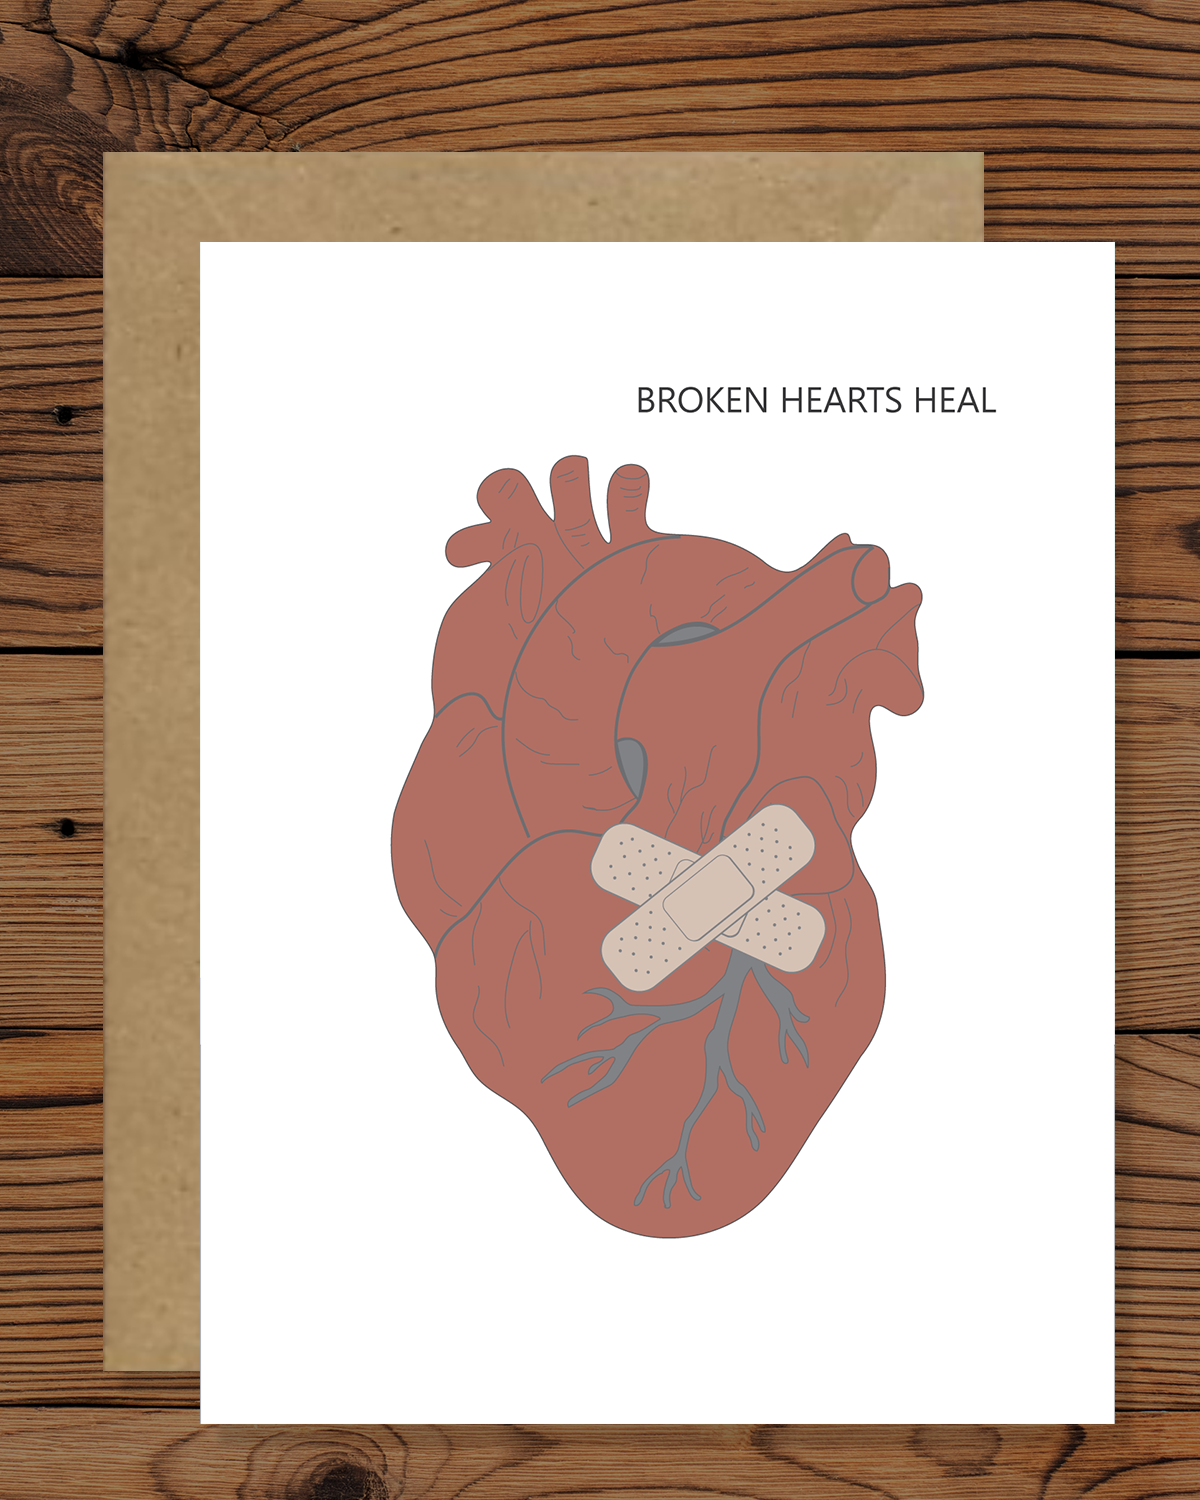 Broken Hearts Heal!